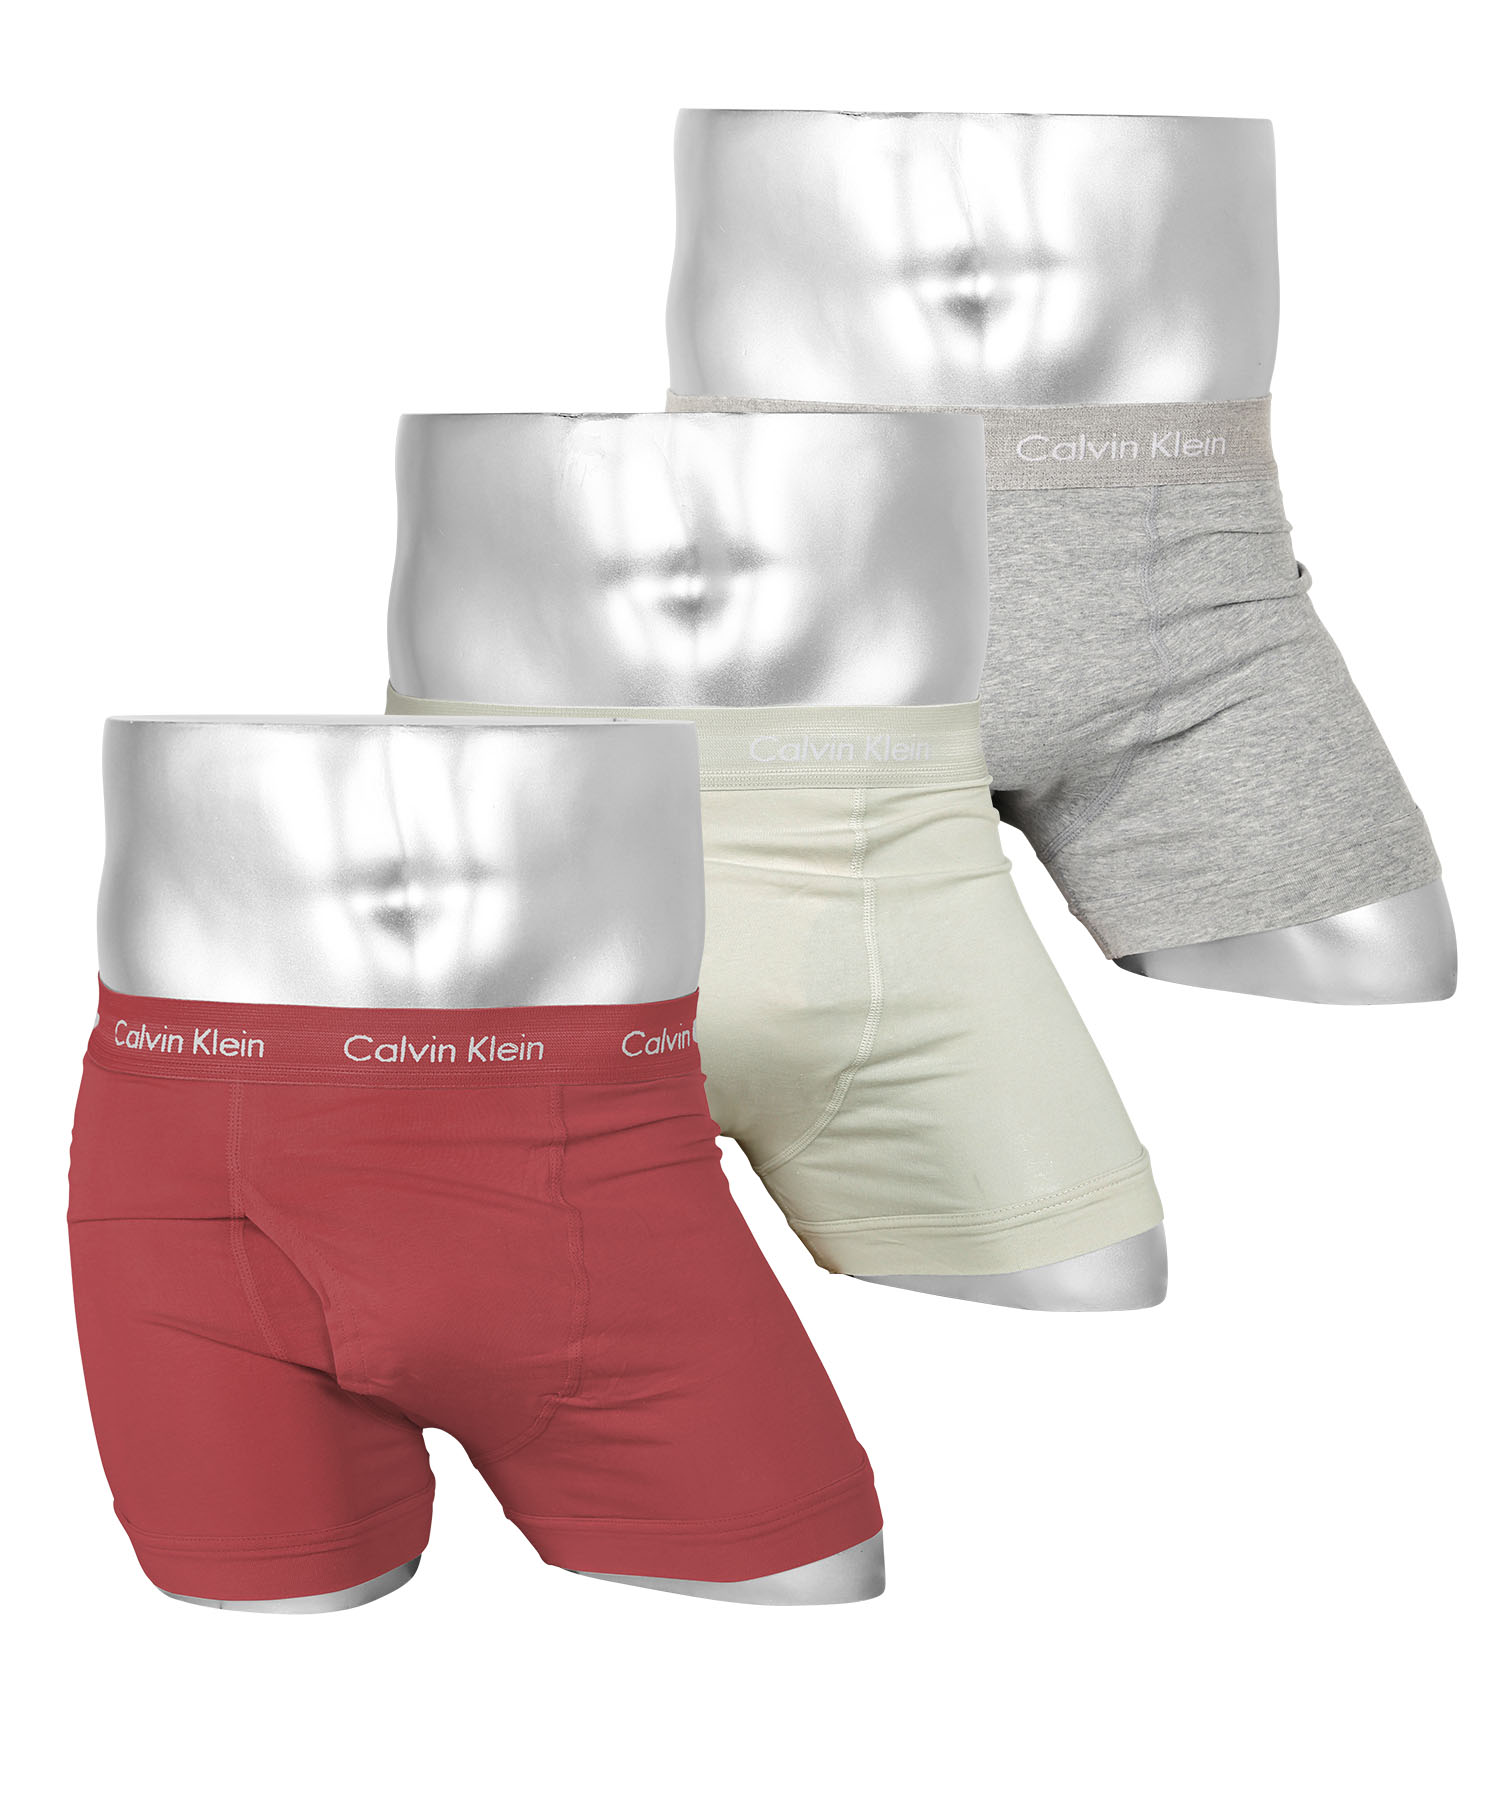 カルバンクライン Calvin Klein ボクサーパンツ 3枚セット メンズ アンダーウェア 男性下着 綿混 コットン 前開き CK ロゴ 高級  ハイブランド